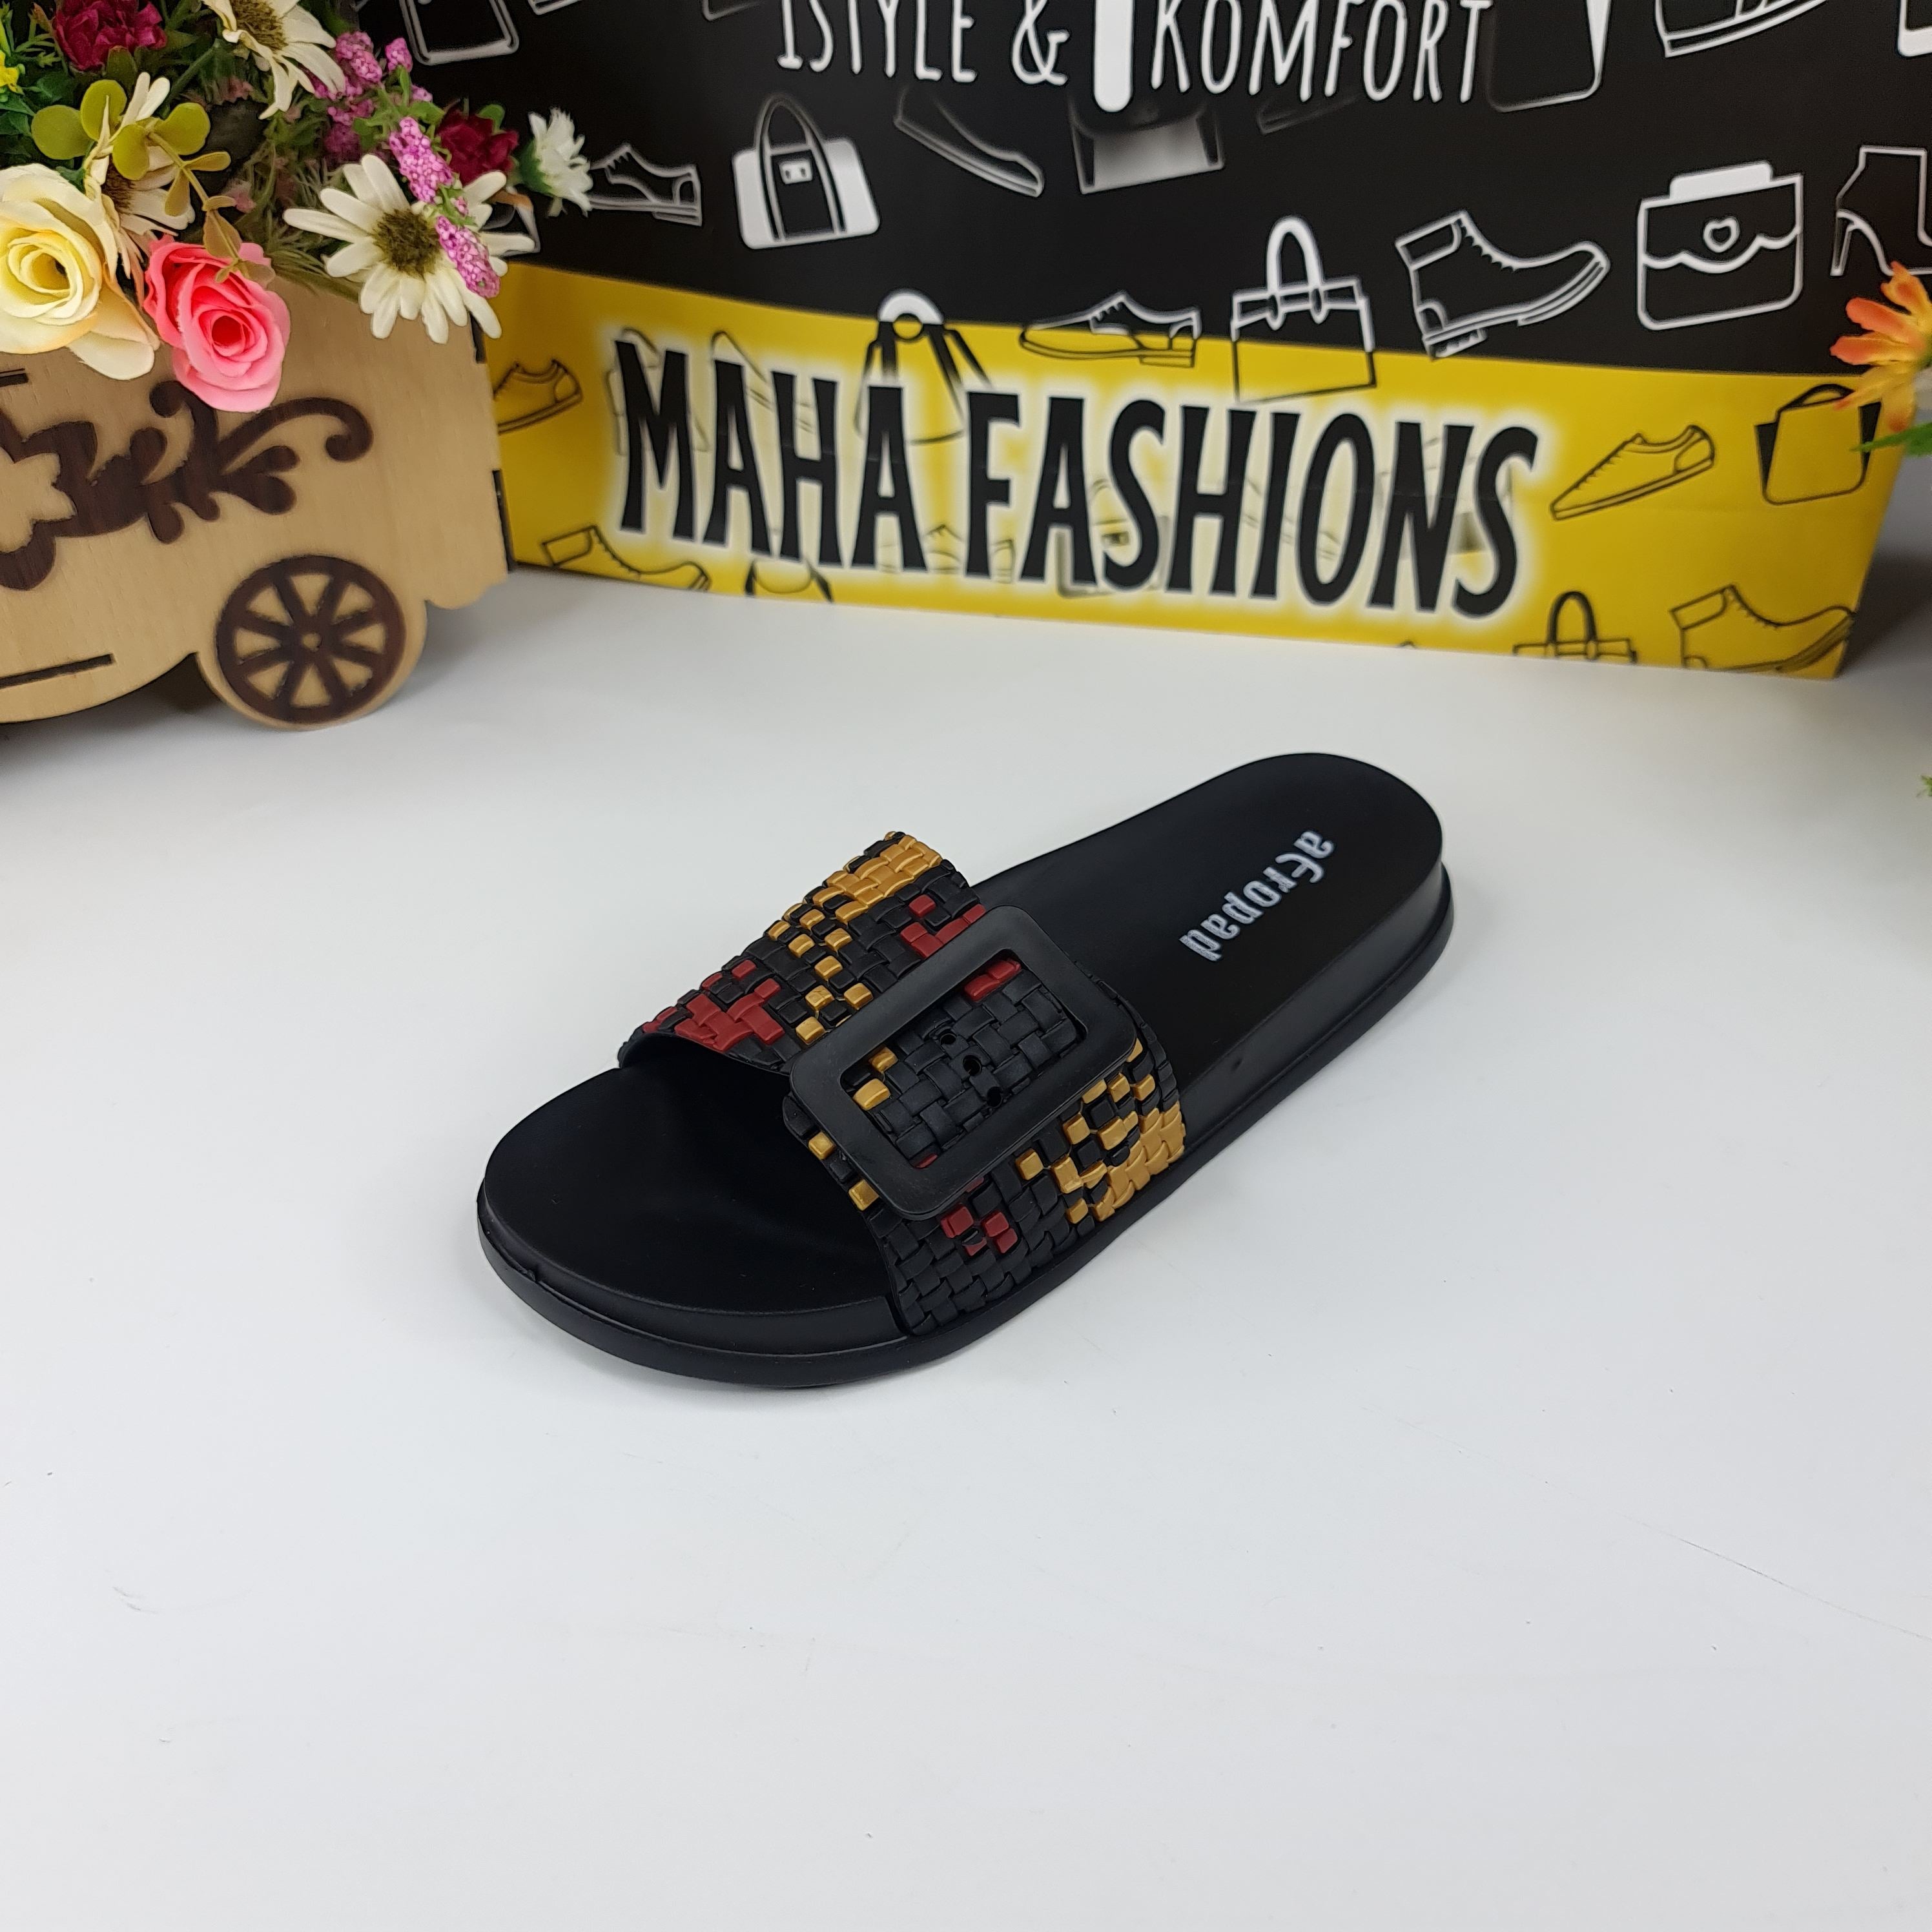 SJ-260 BLACK - Maha fashions -  